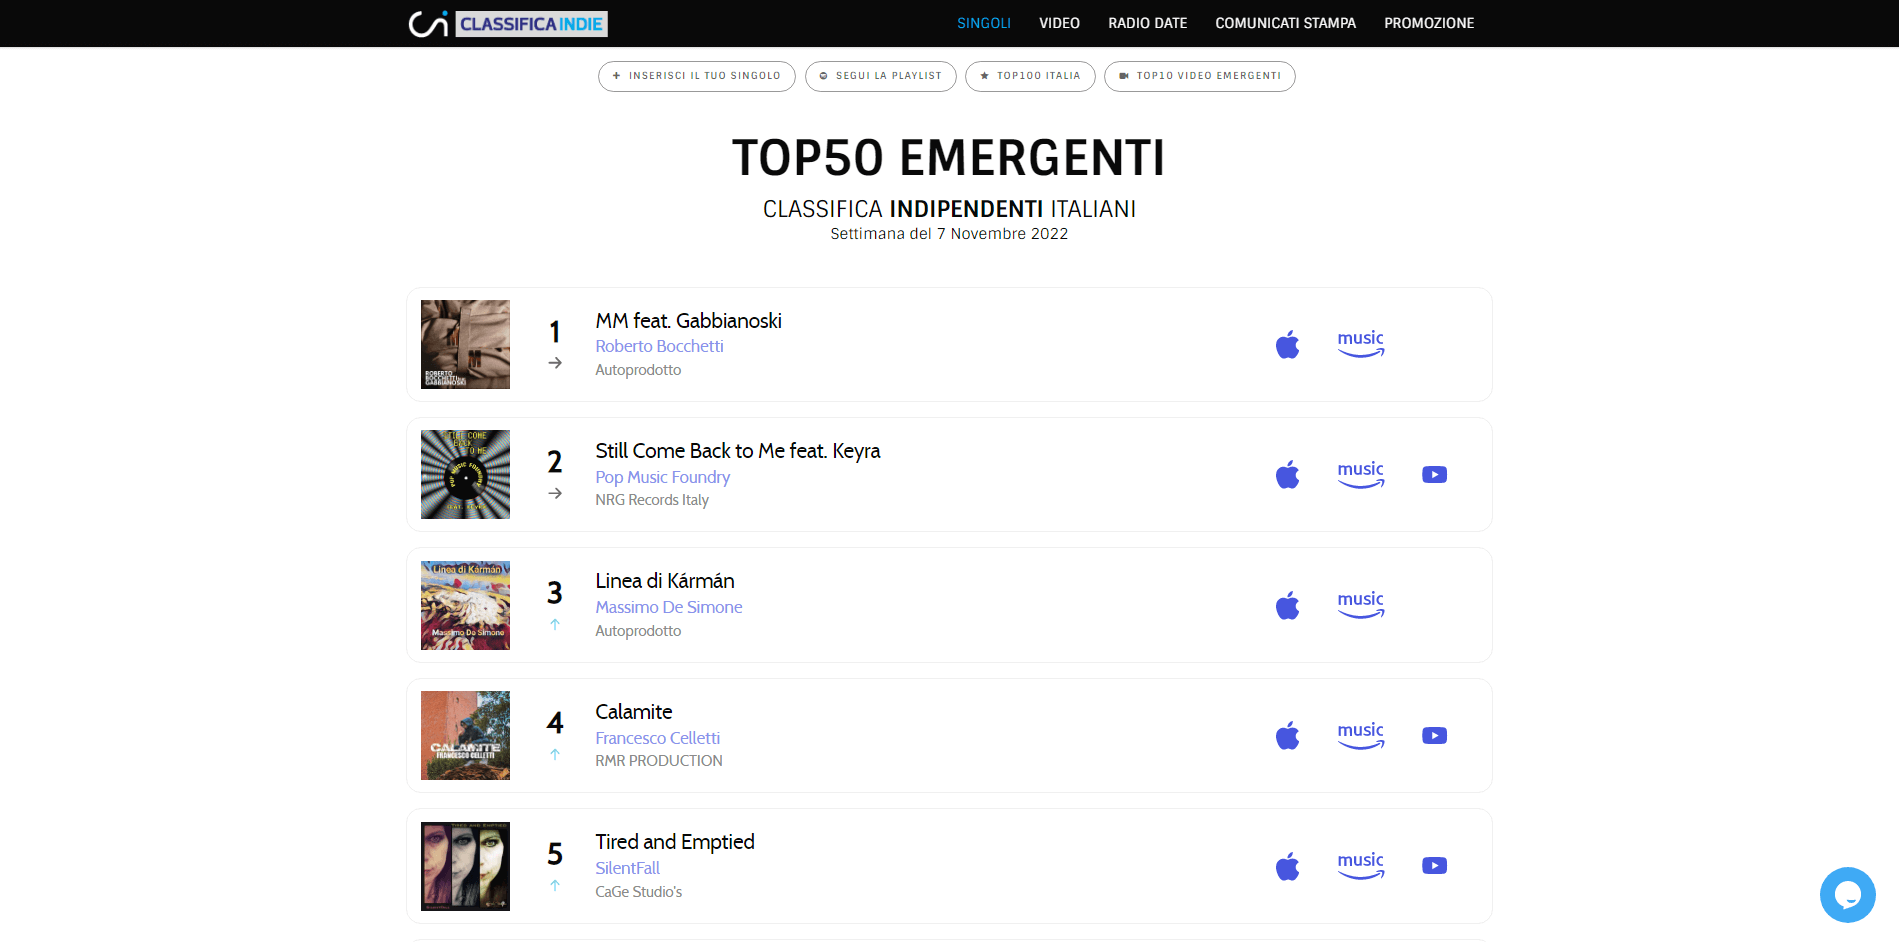 "MM", il singolo di Roberto Bocchetti Feat. Gabbianoski, è al n. 1 della classifica Emergenti Indipendenti TOP50 nella settimana del 7 Novembre 2022